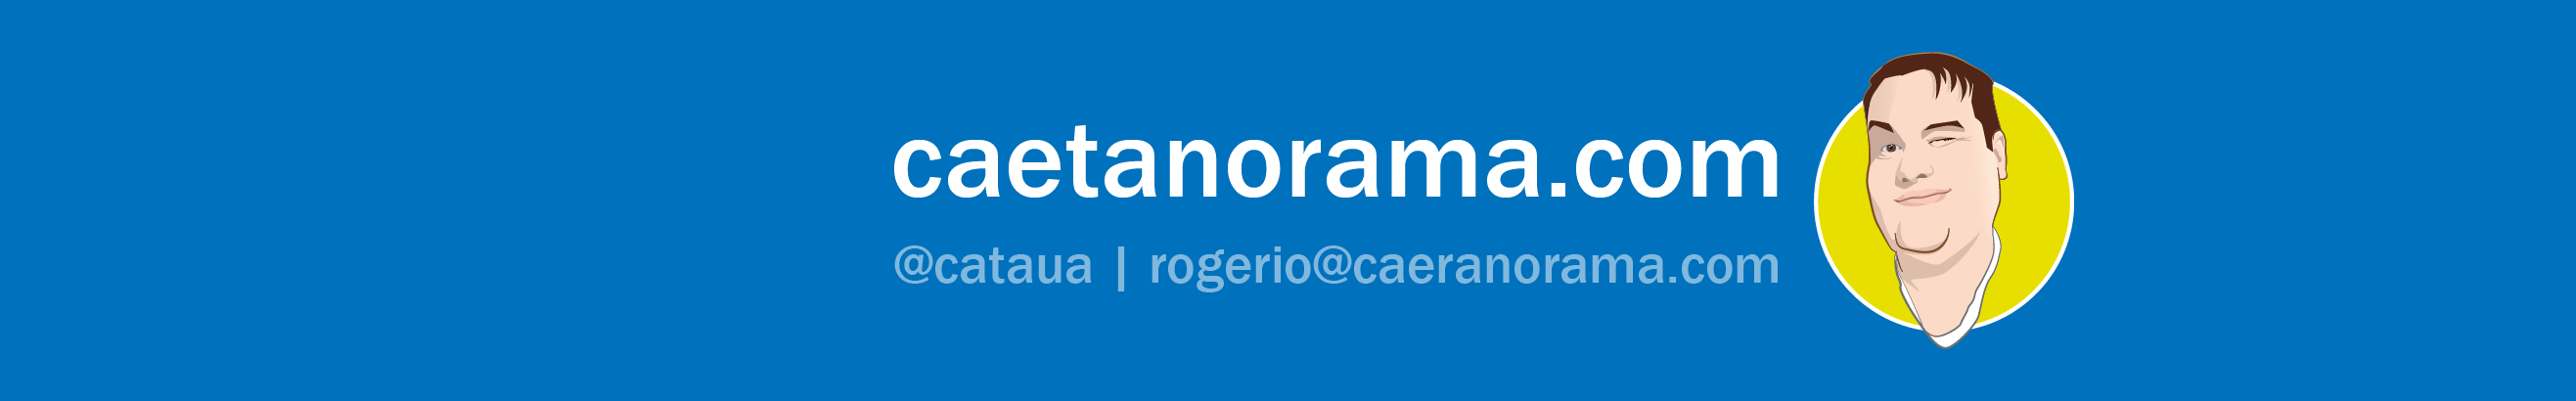 Rogério Caetano's profile banner